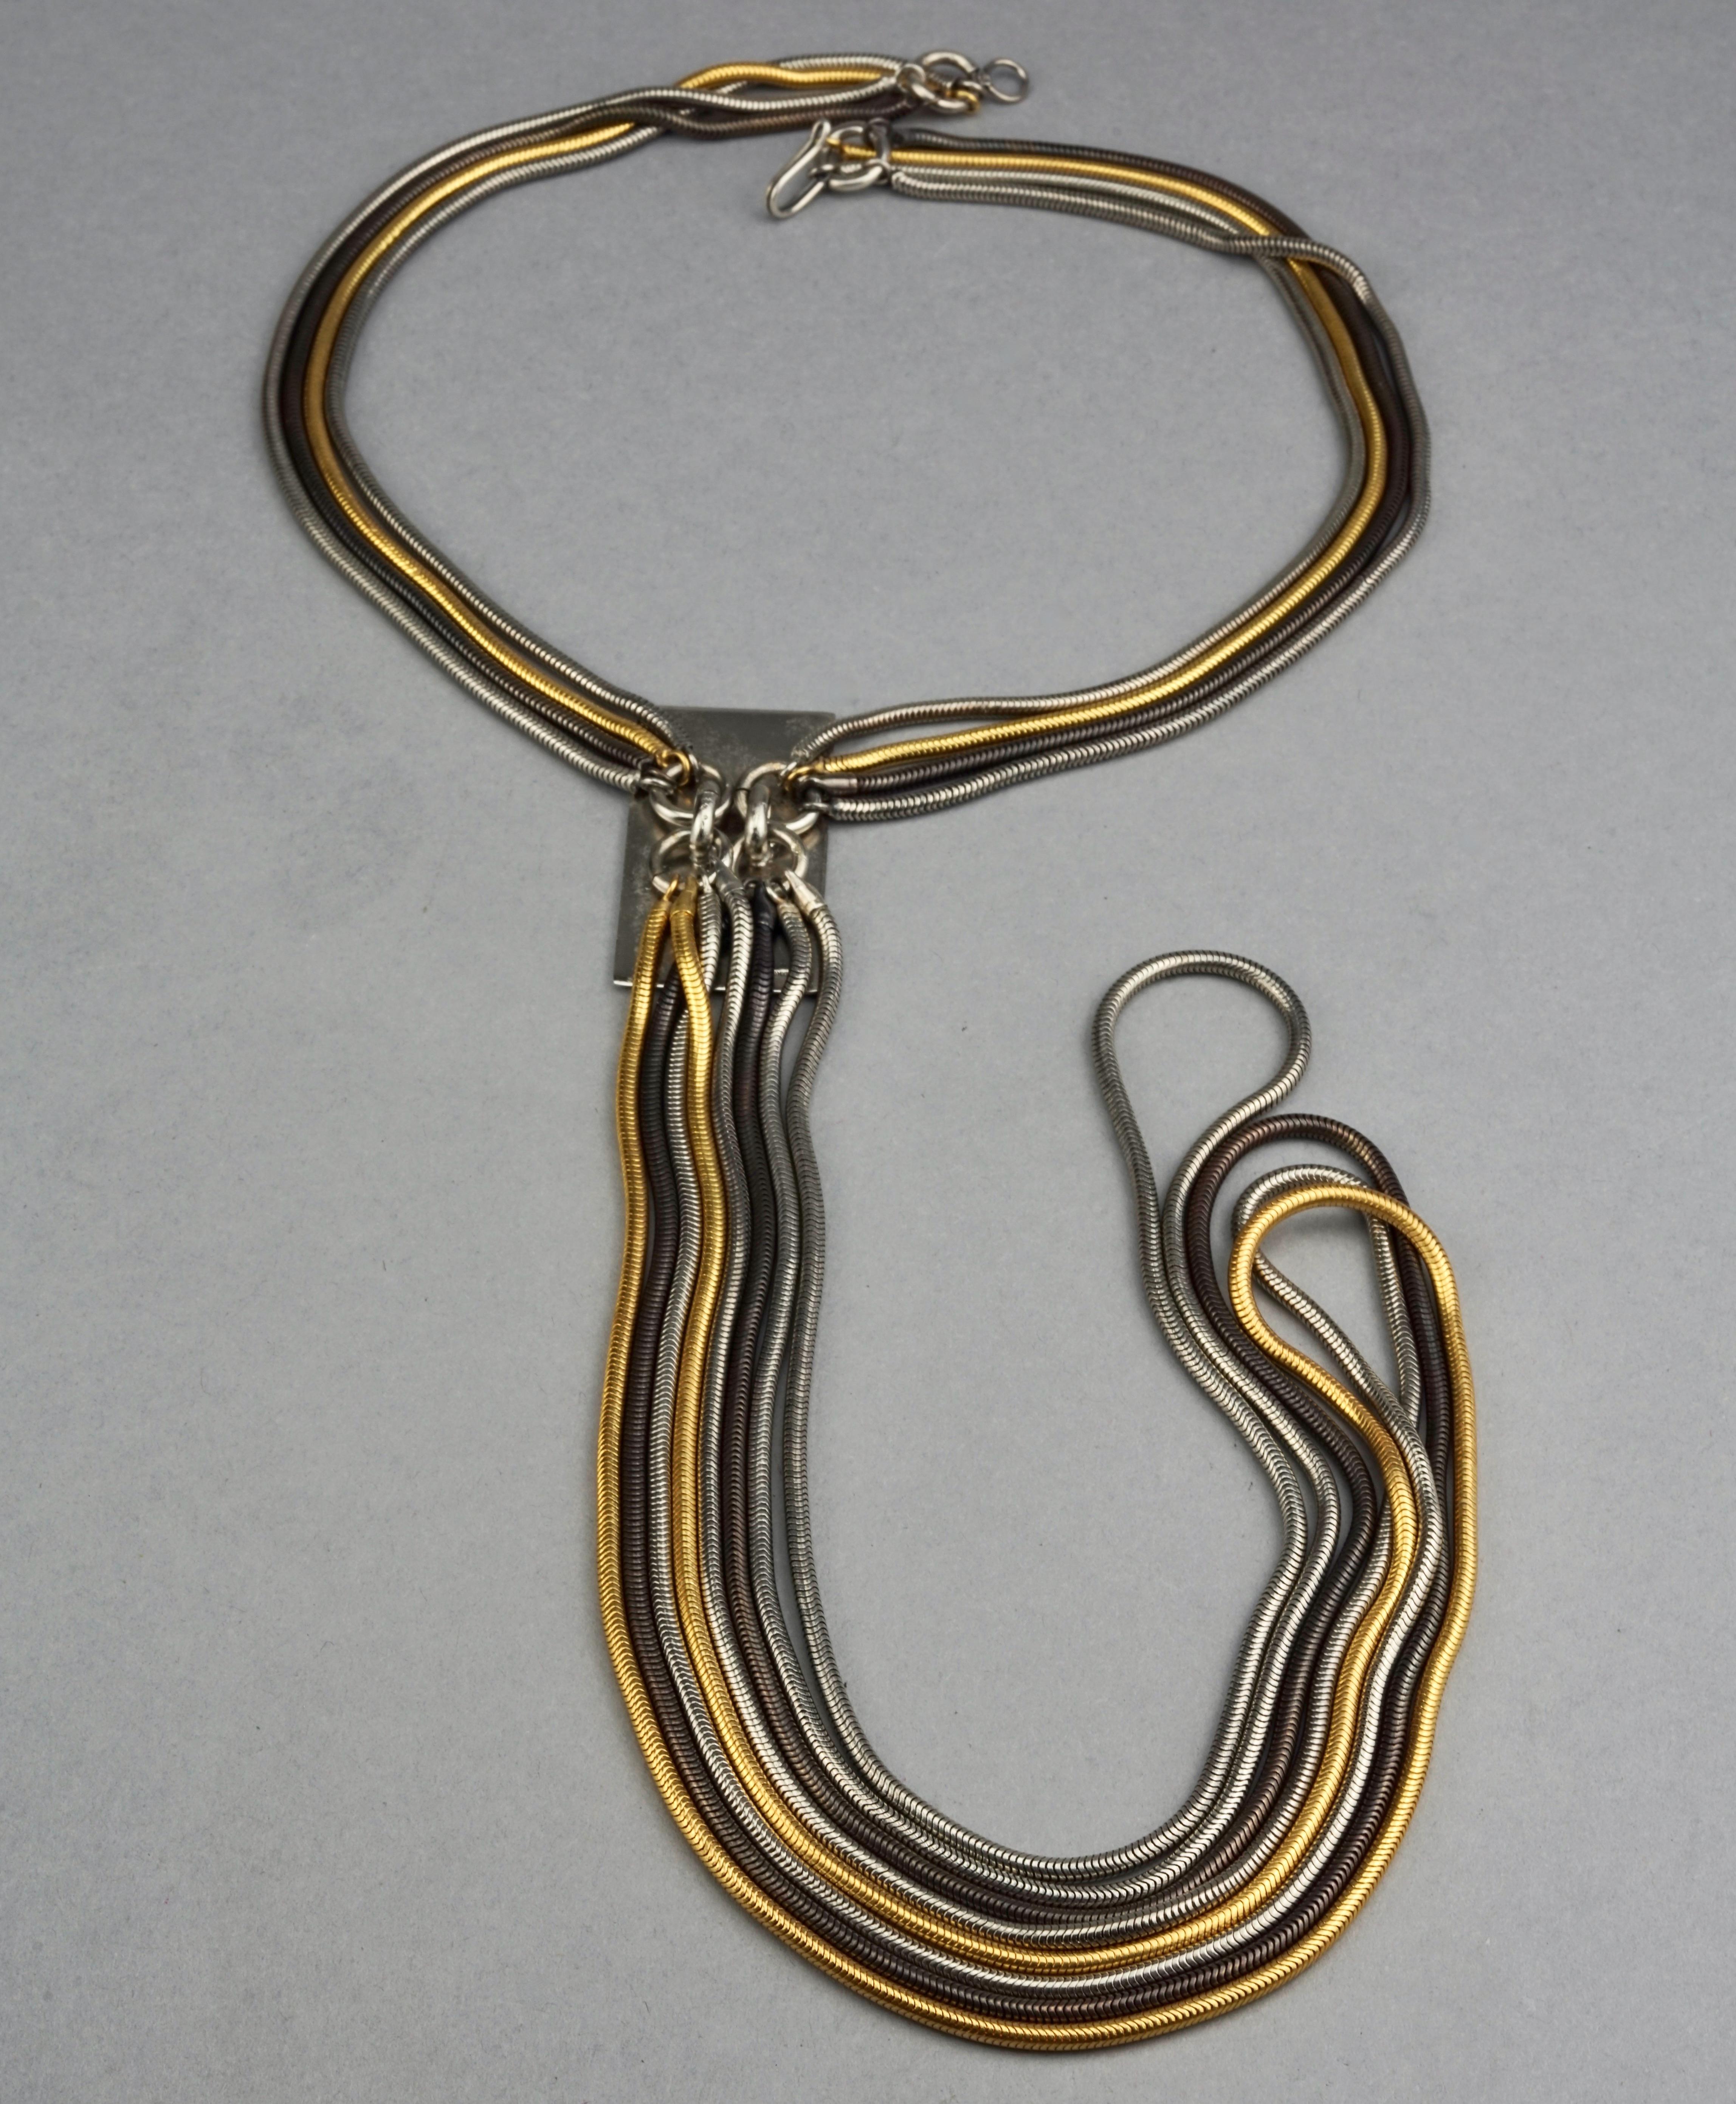 34 cm necklace